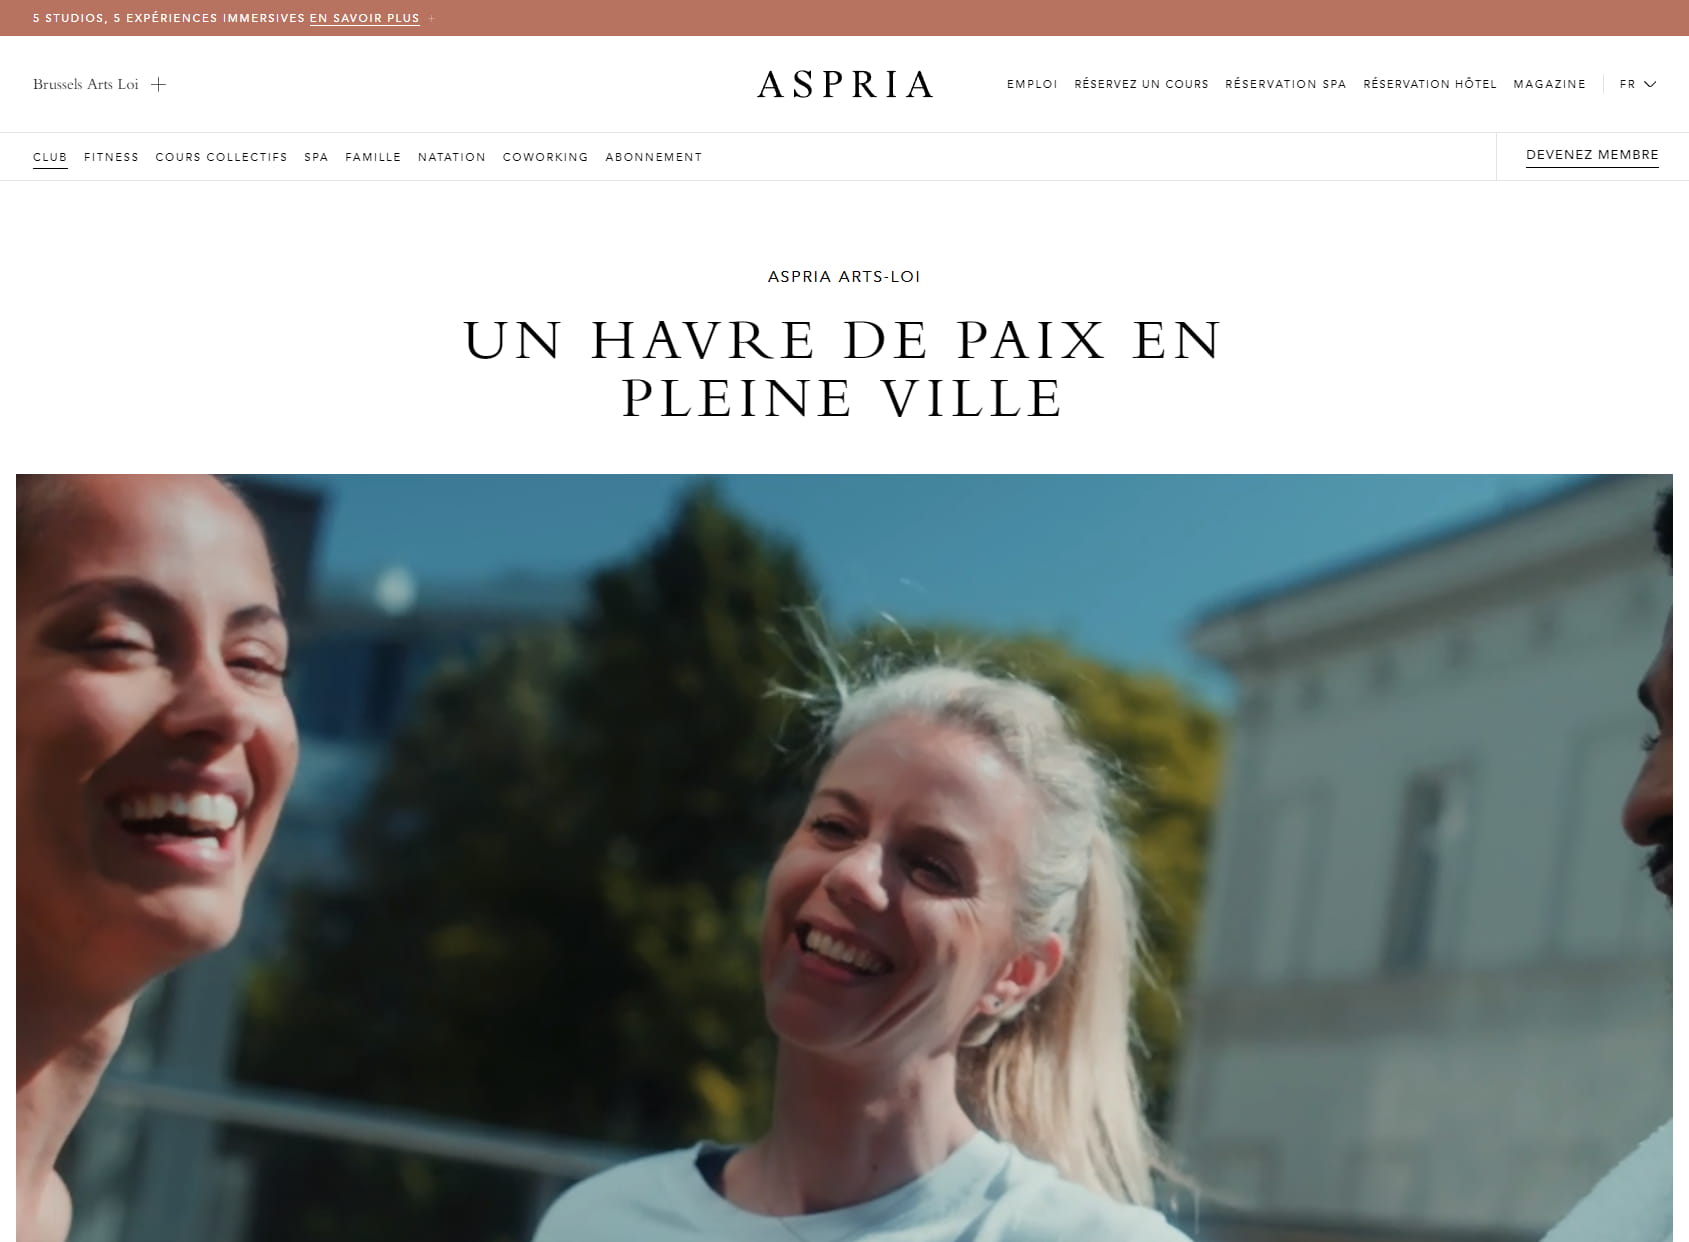 Aspria Brussels Arts-Loi